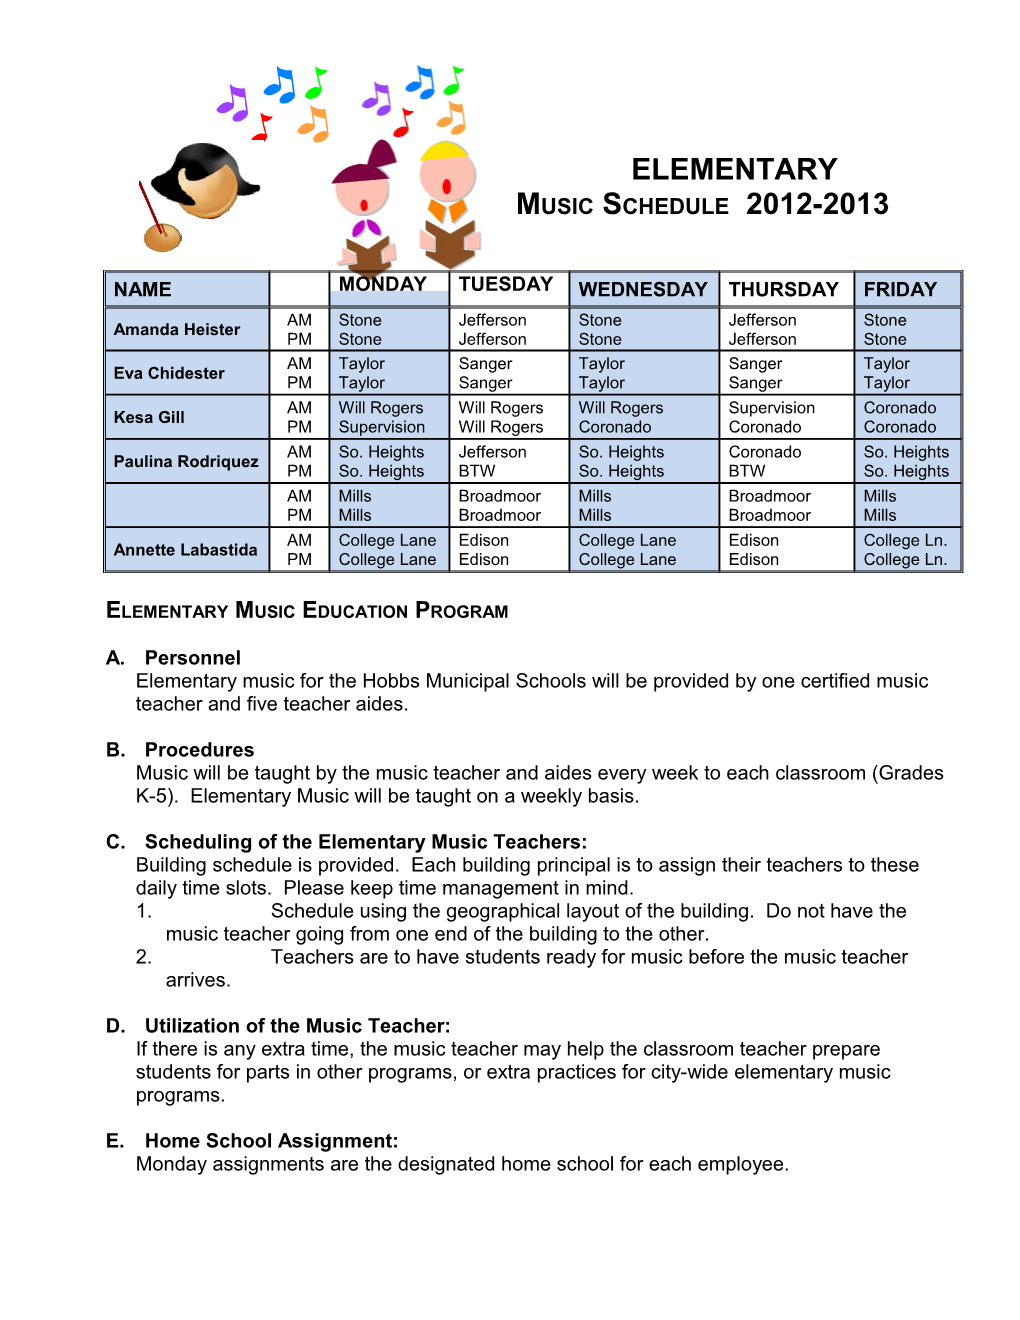 Elementary Music Schedule